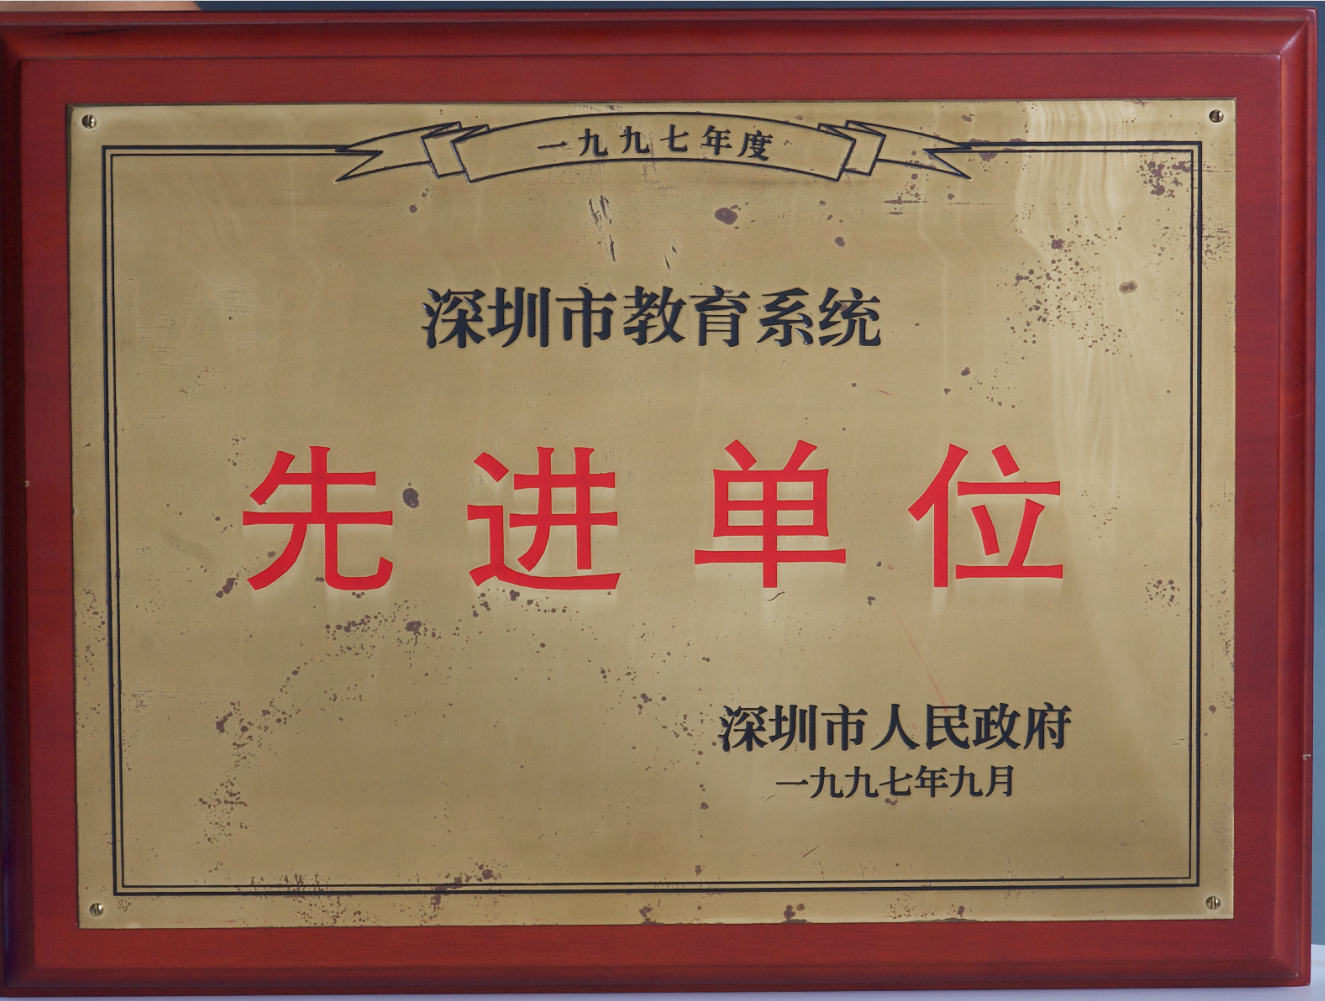 1997年度深圳市教育局系统先进单位